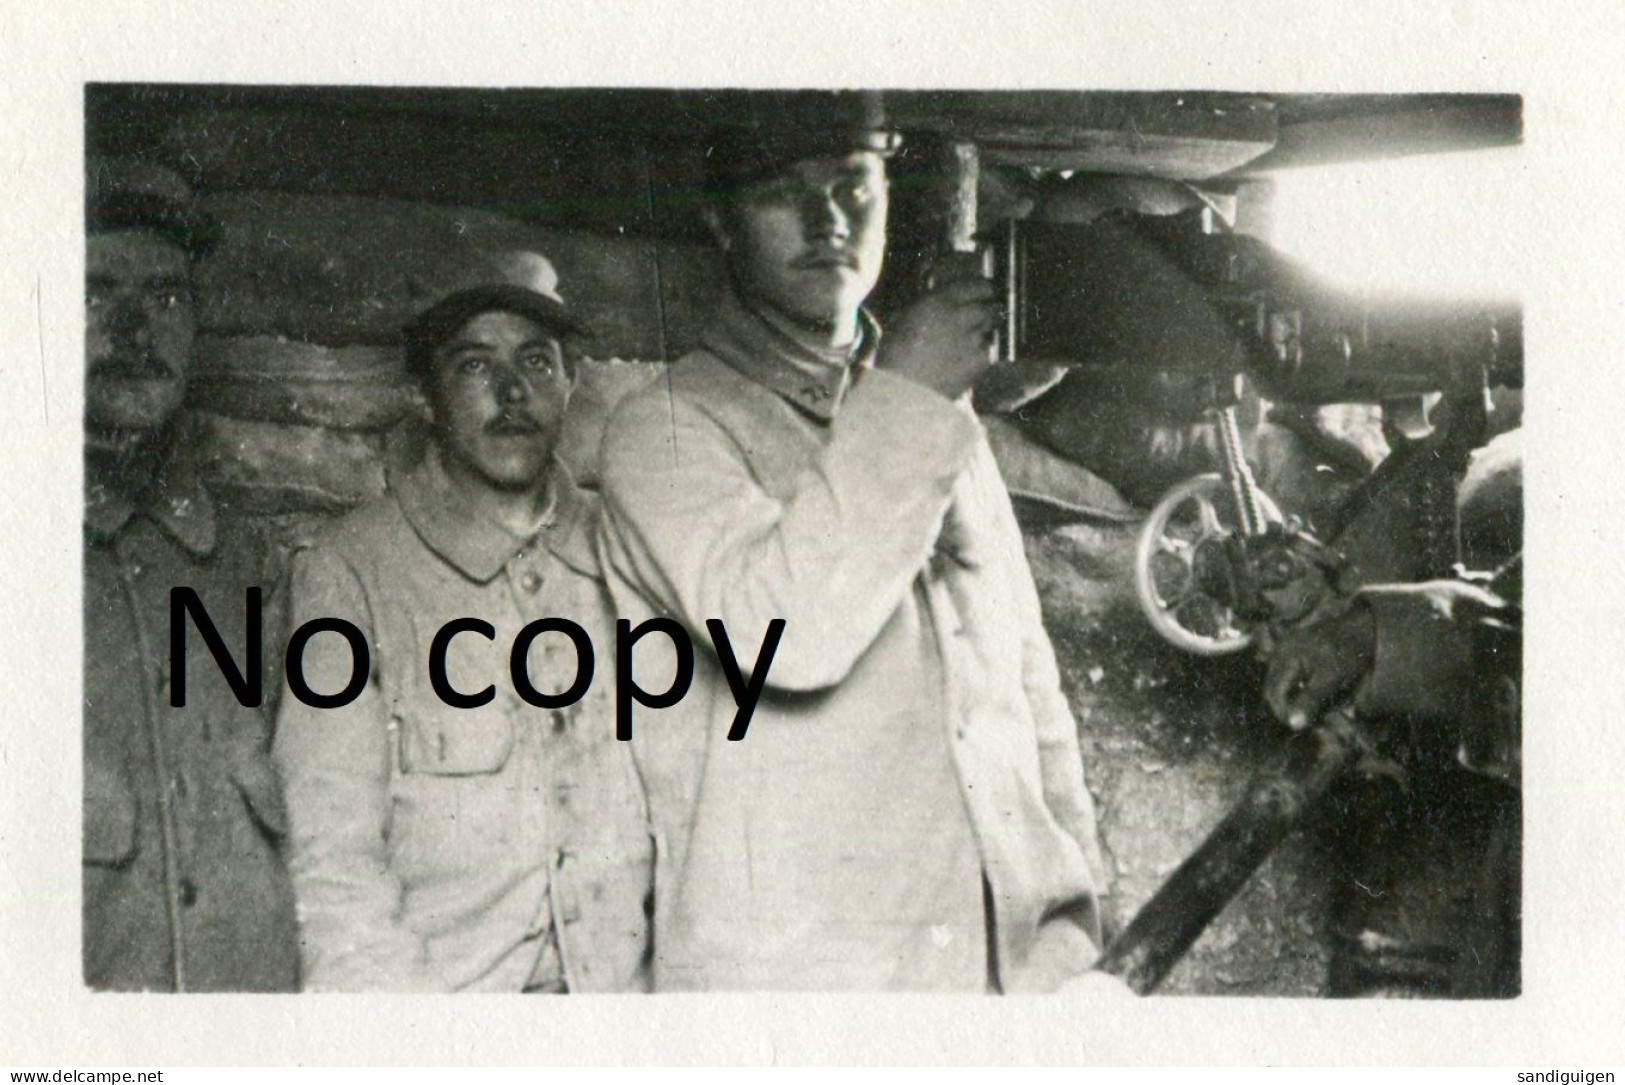 PHOTO FRANCAISE 2e RAL - MITRAILLEUR EN 1ere LIGNE A AUBERIVE PRES DE PROSNES - REIMS MARNE - GUERRE 1914 1918 - Guerre, Militaire